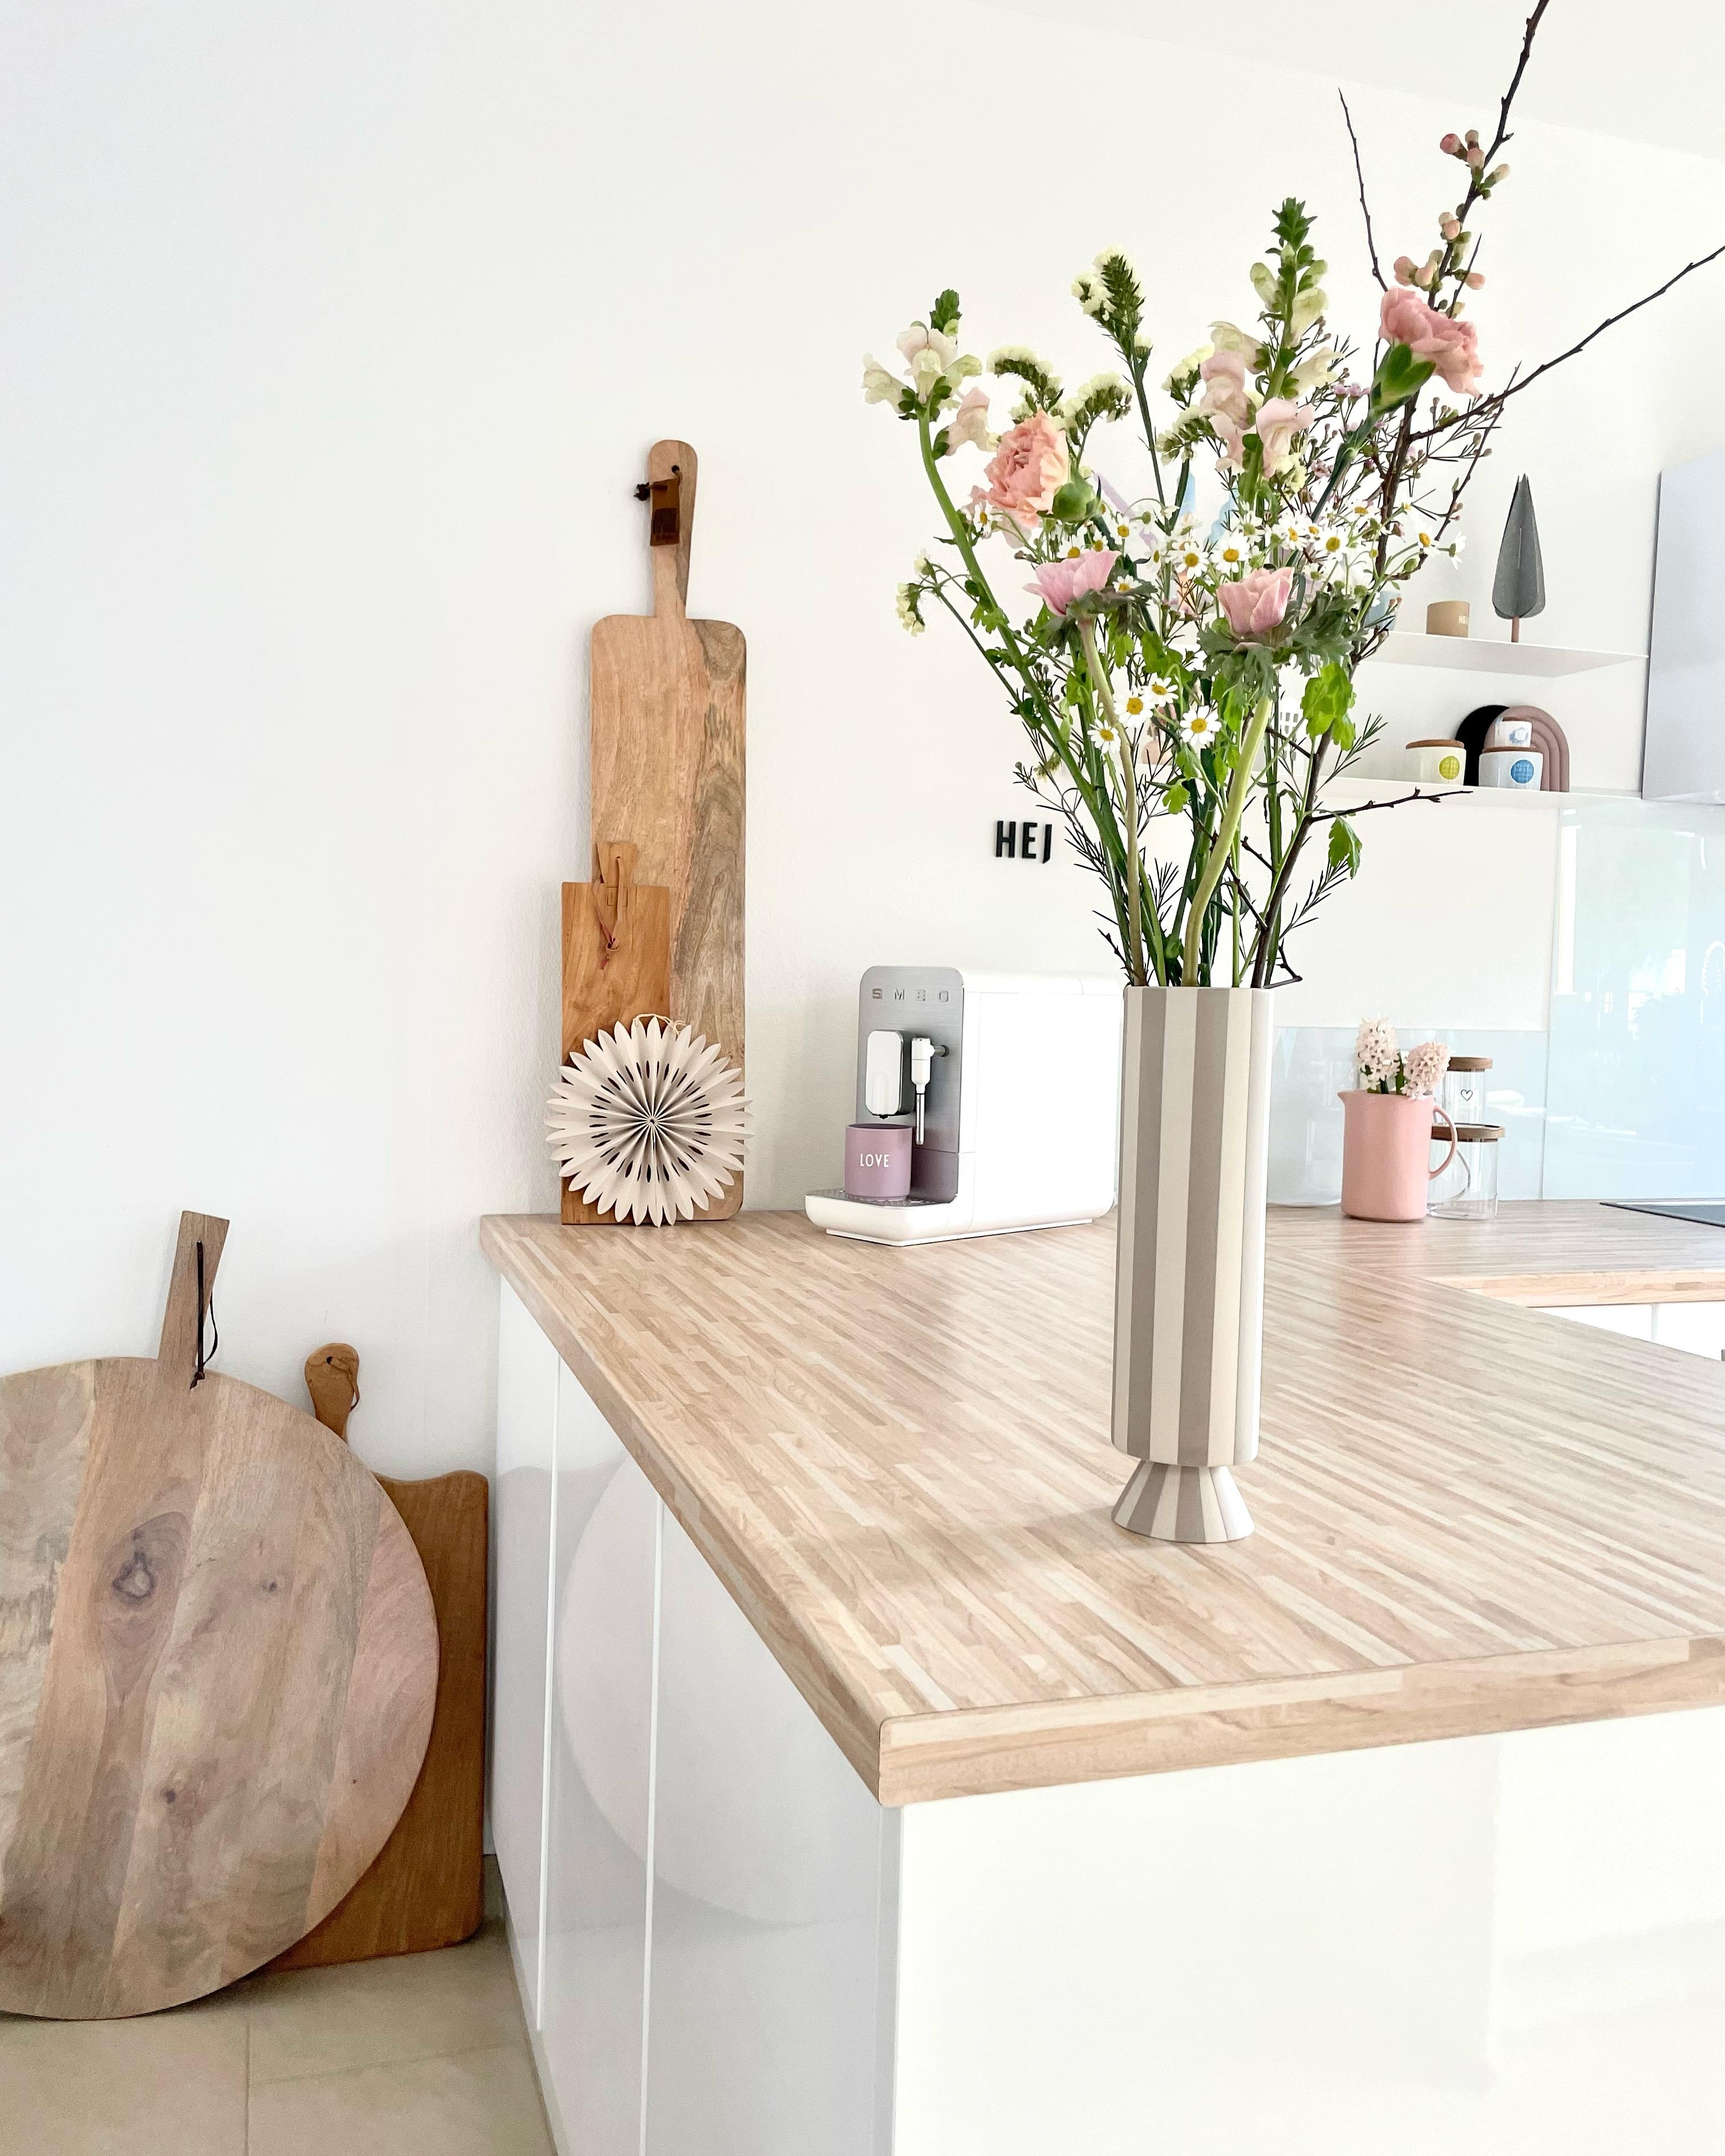 Hier ist eine neue #vase eingezogen und frische #blümchen 🫶
#küche #offeneswohnen #wohnen 